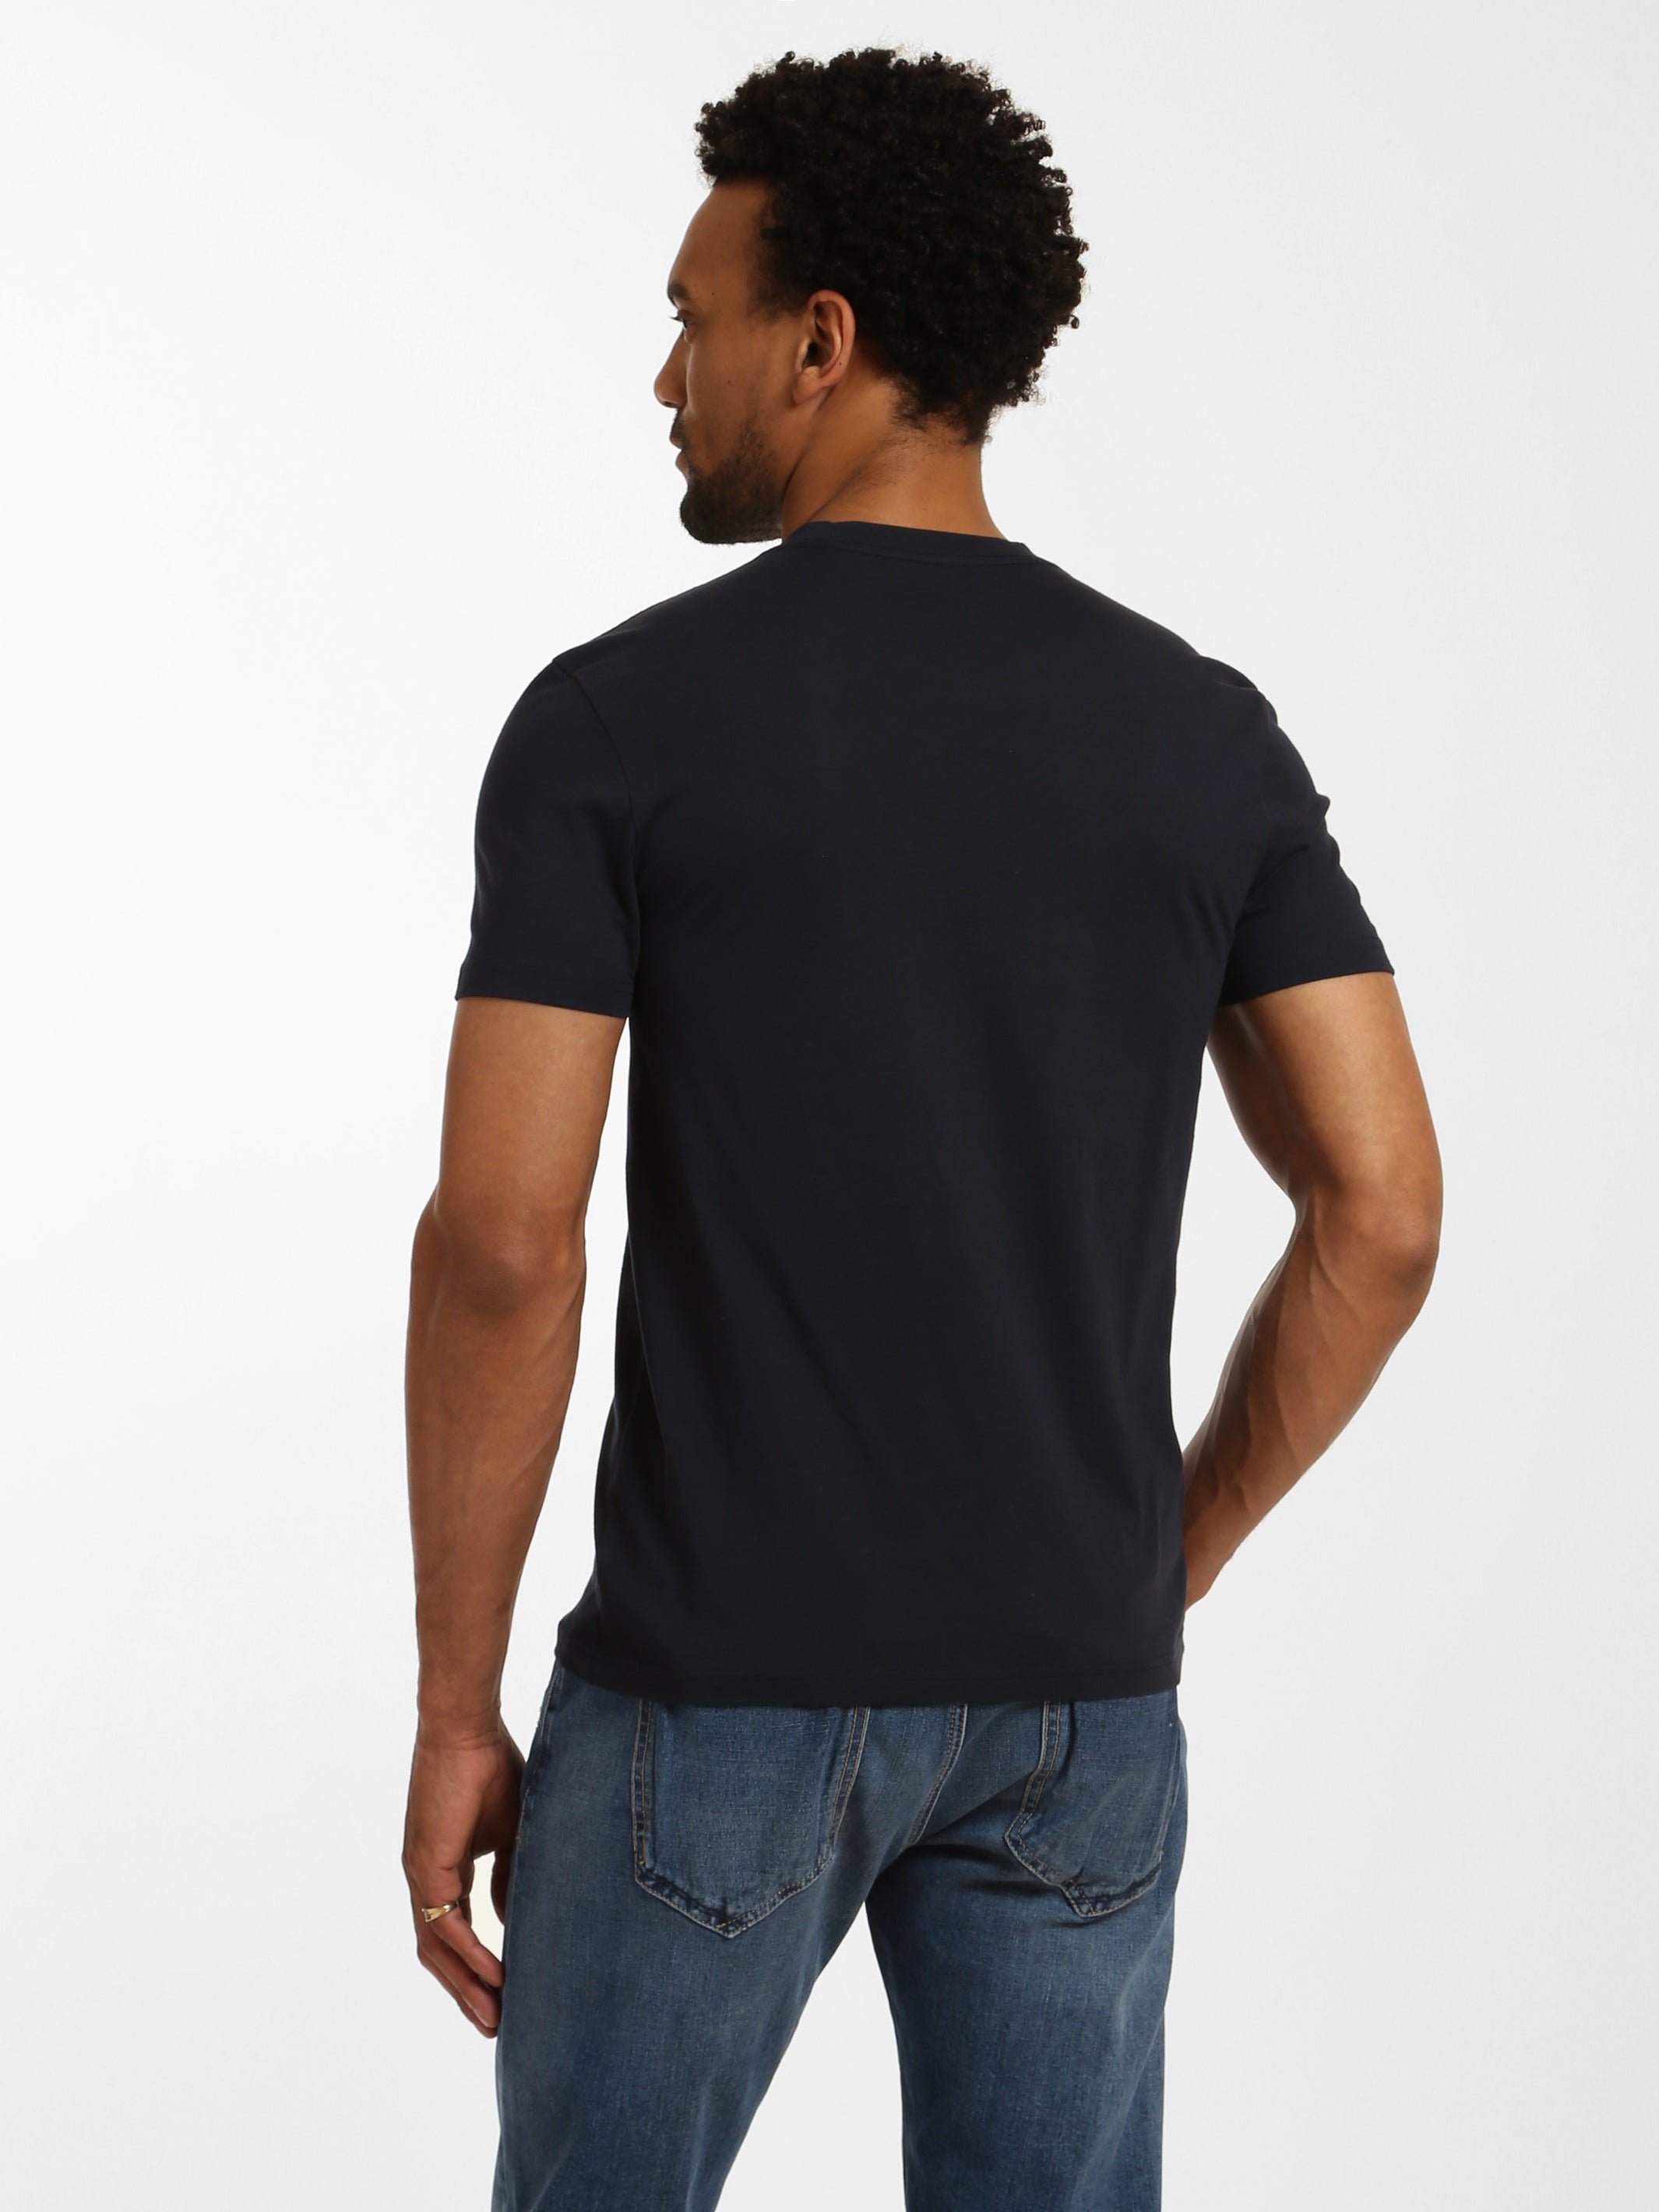 Men's Brooklyn Industries Pirate T-Shirt - BROOKLYN INDUSTRIES